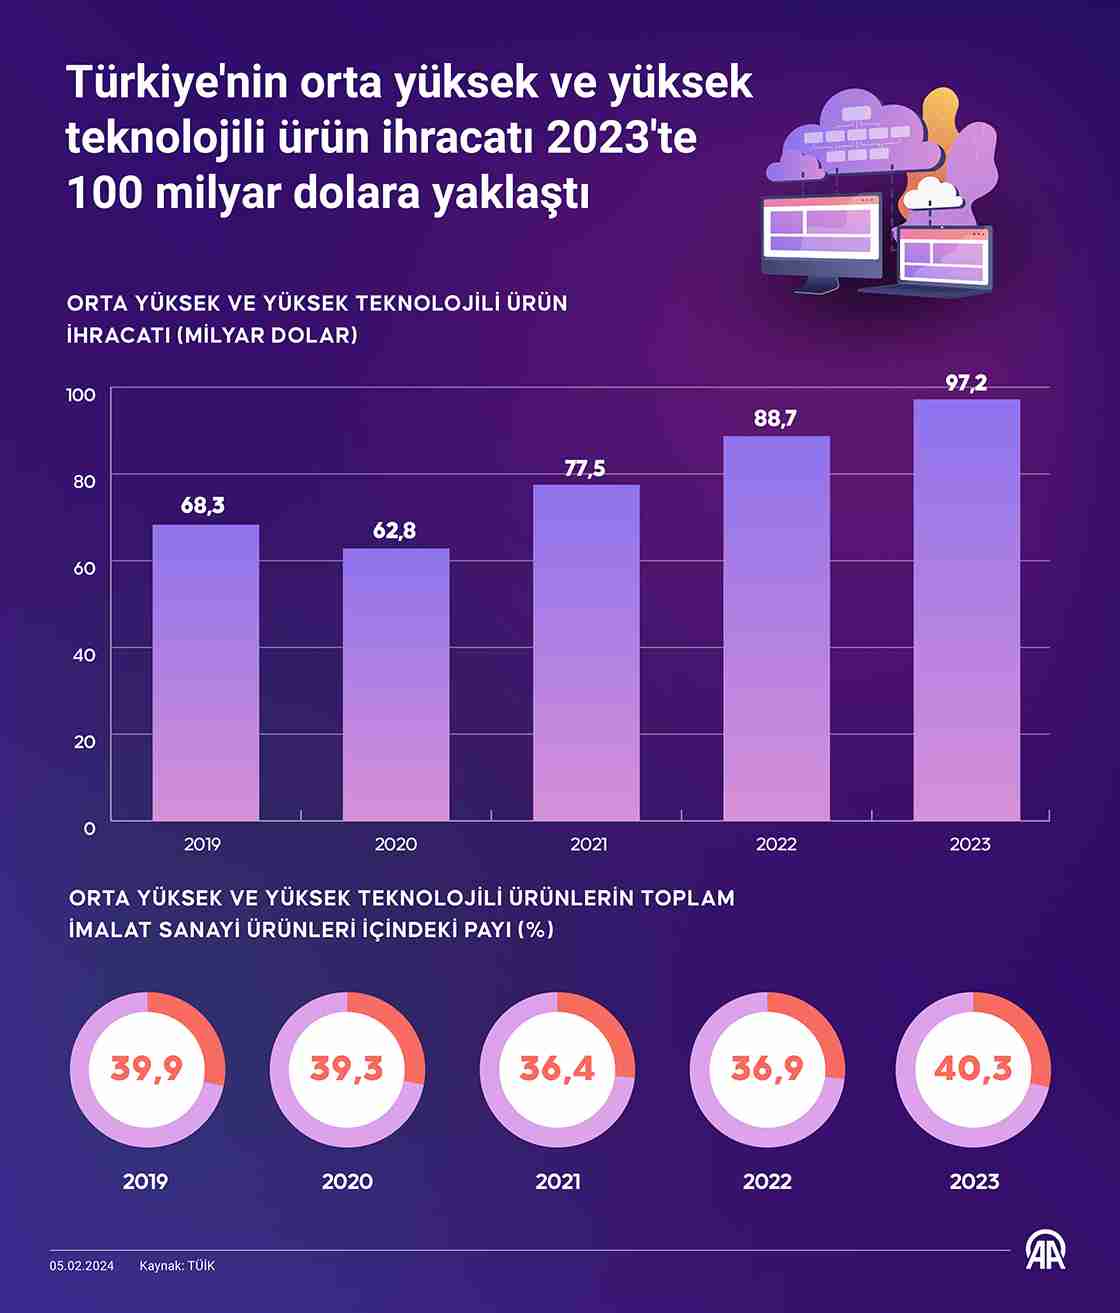 Türkiye’nin orta yüksek ve yüksek teknolojili ürün ihracatında artış